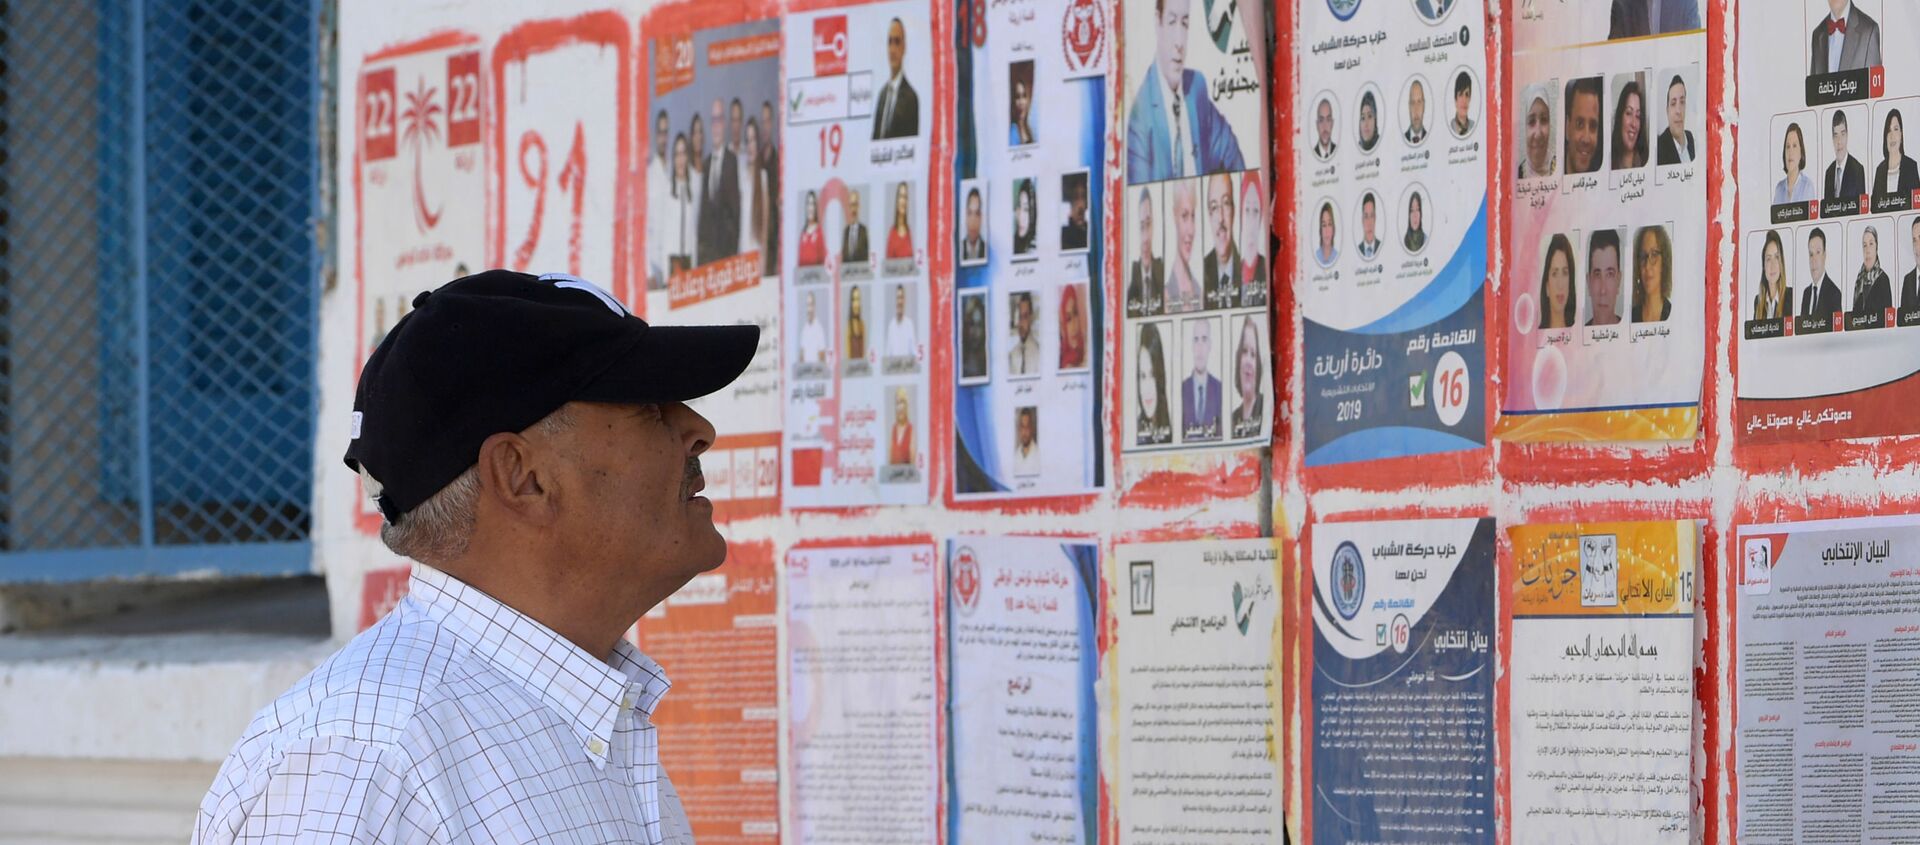 Un Tunisien devant les affiches des différents candidats aux législatives tunisiennes - Sputnik Afrique, 1920, 18.10.2019